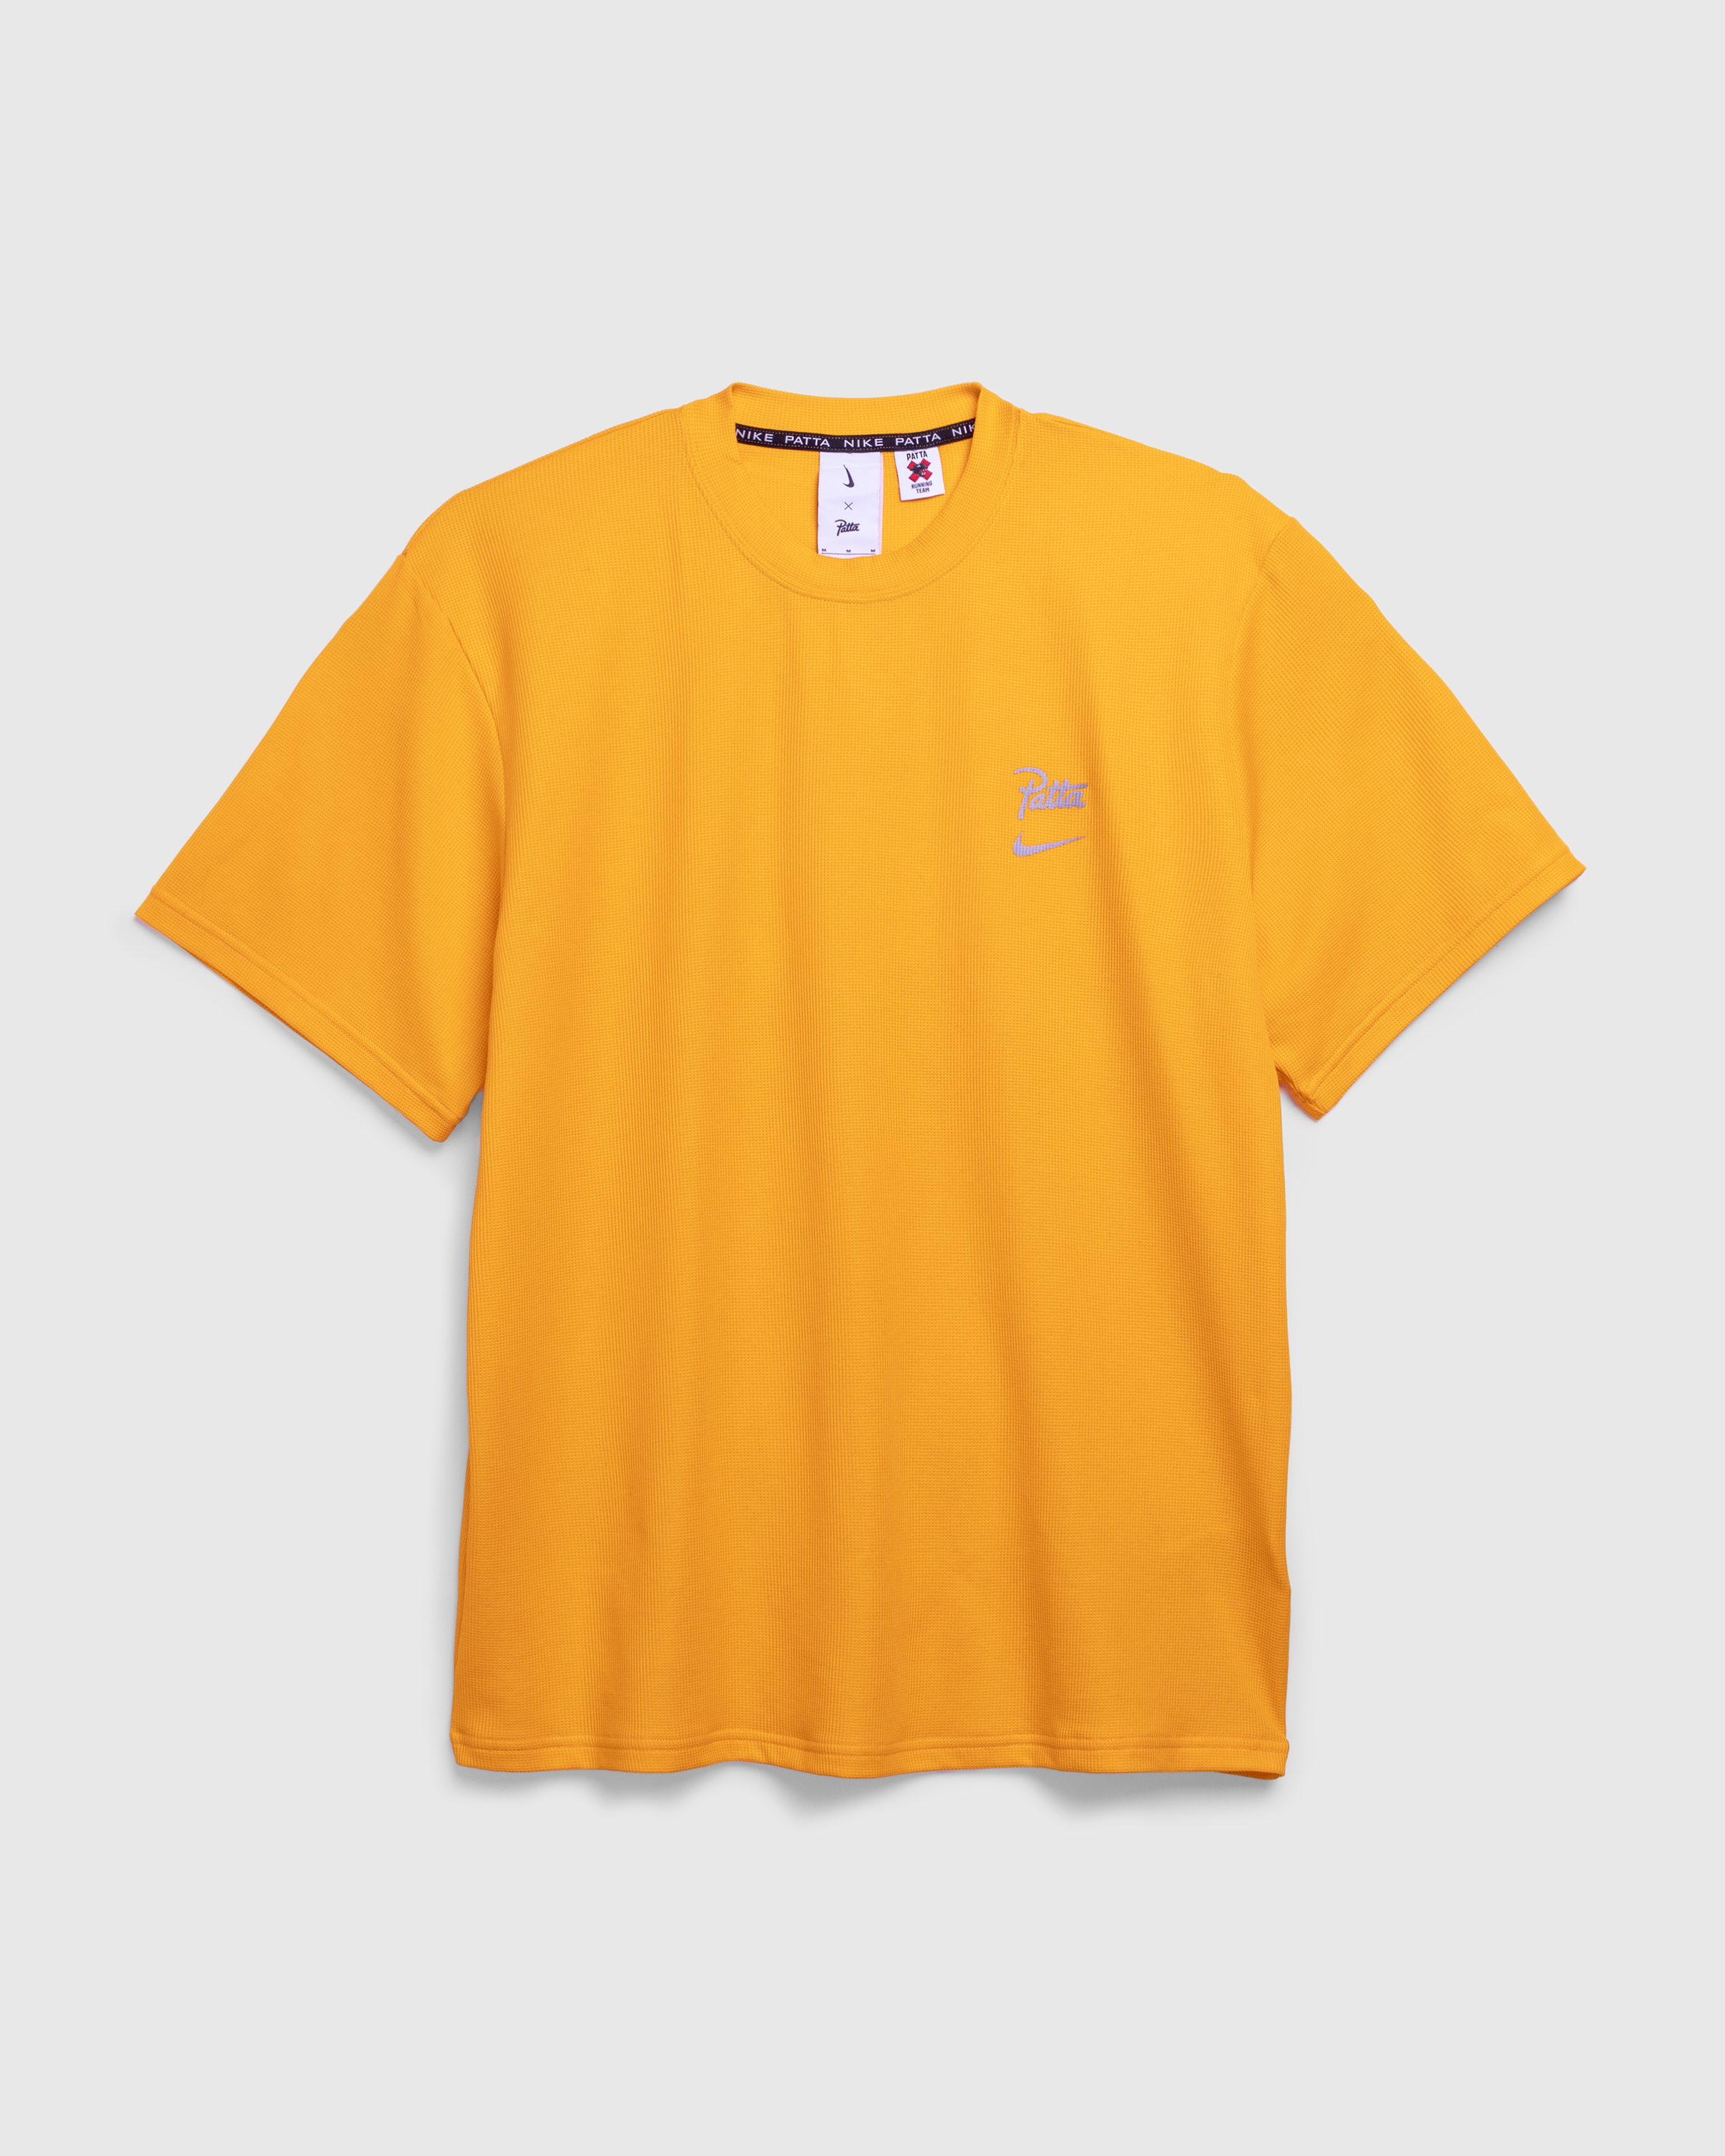 Nike x Patta – Running Team T-Shirt Sundial - T-Shirts - Yellow - Image 6